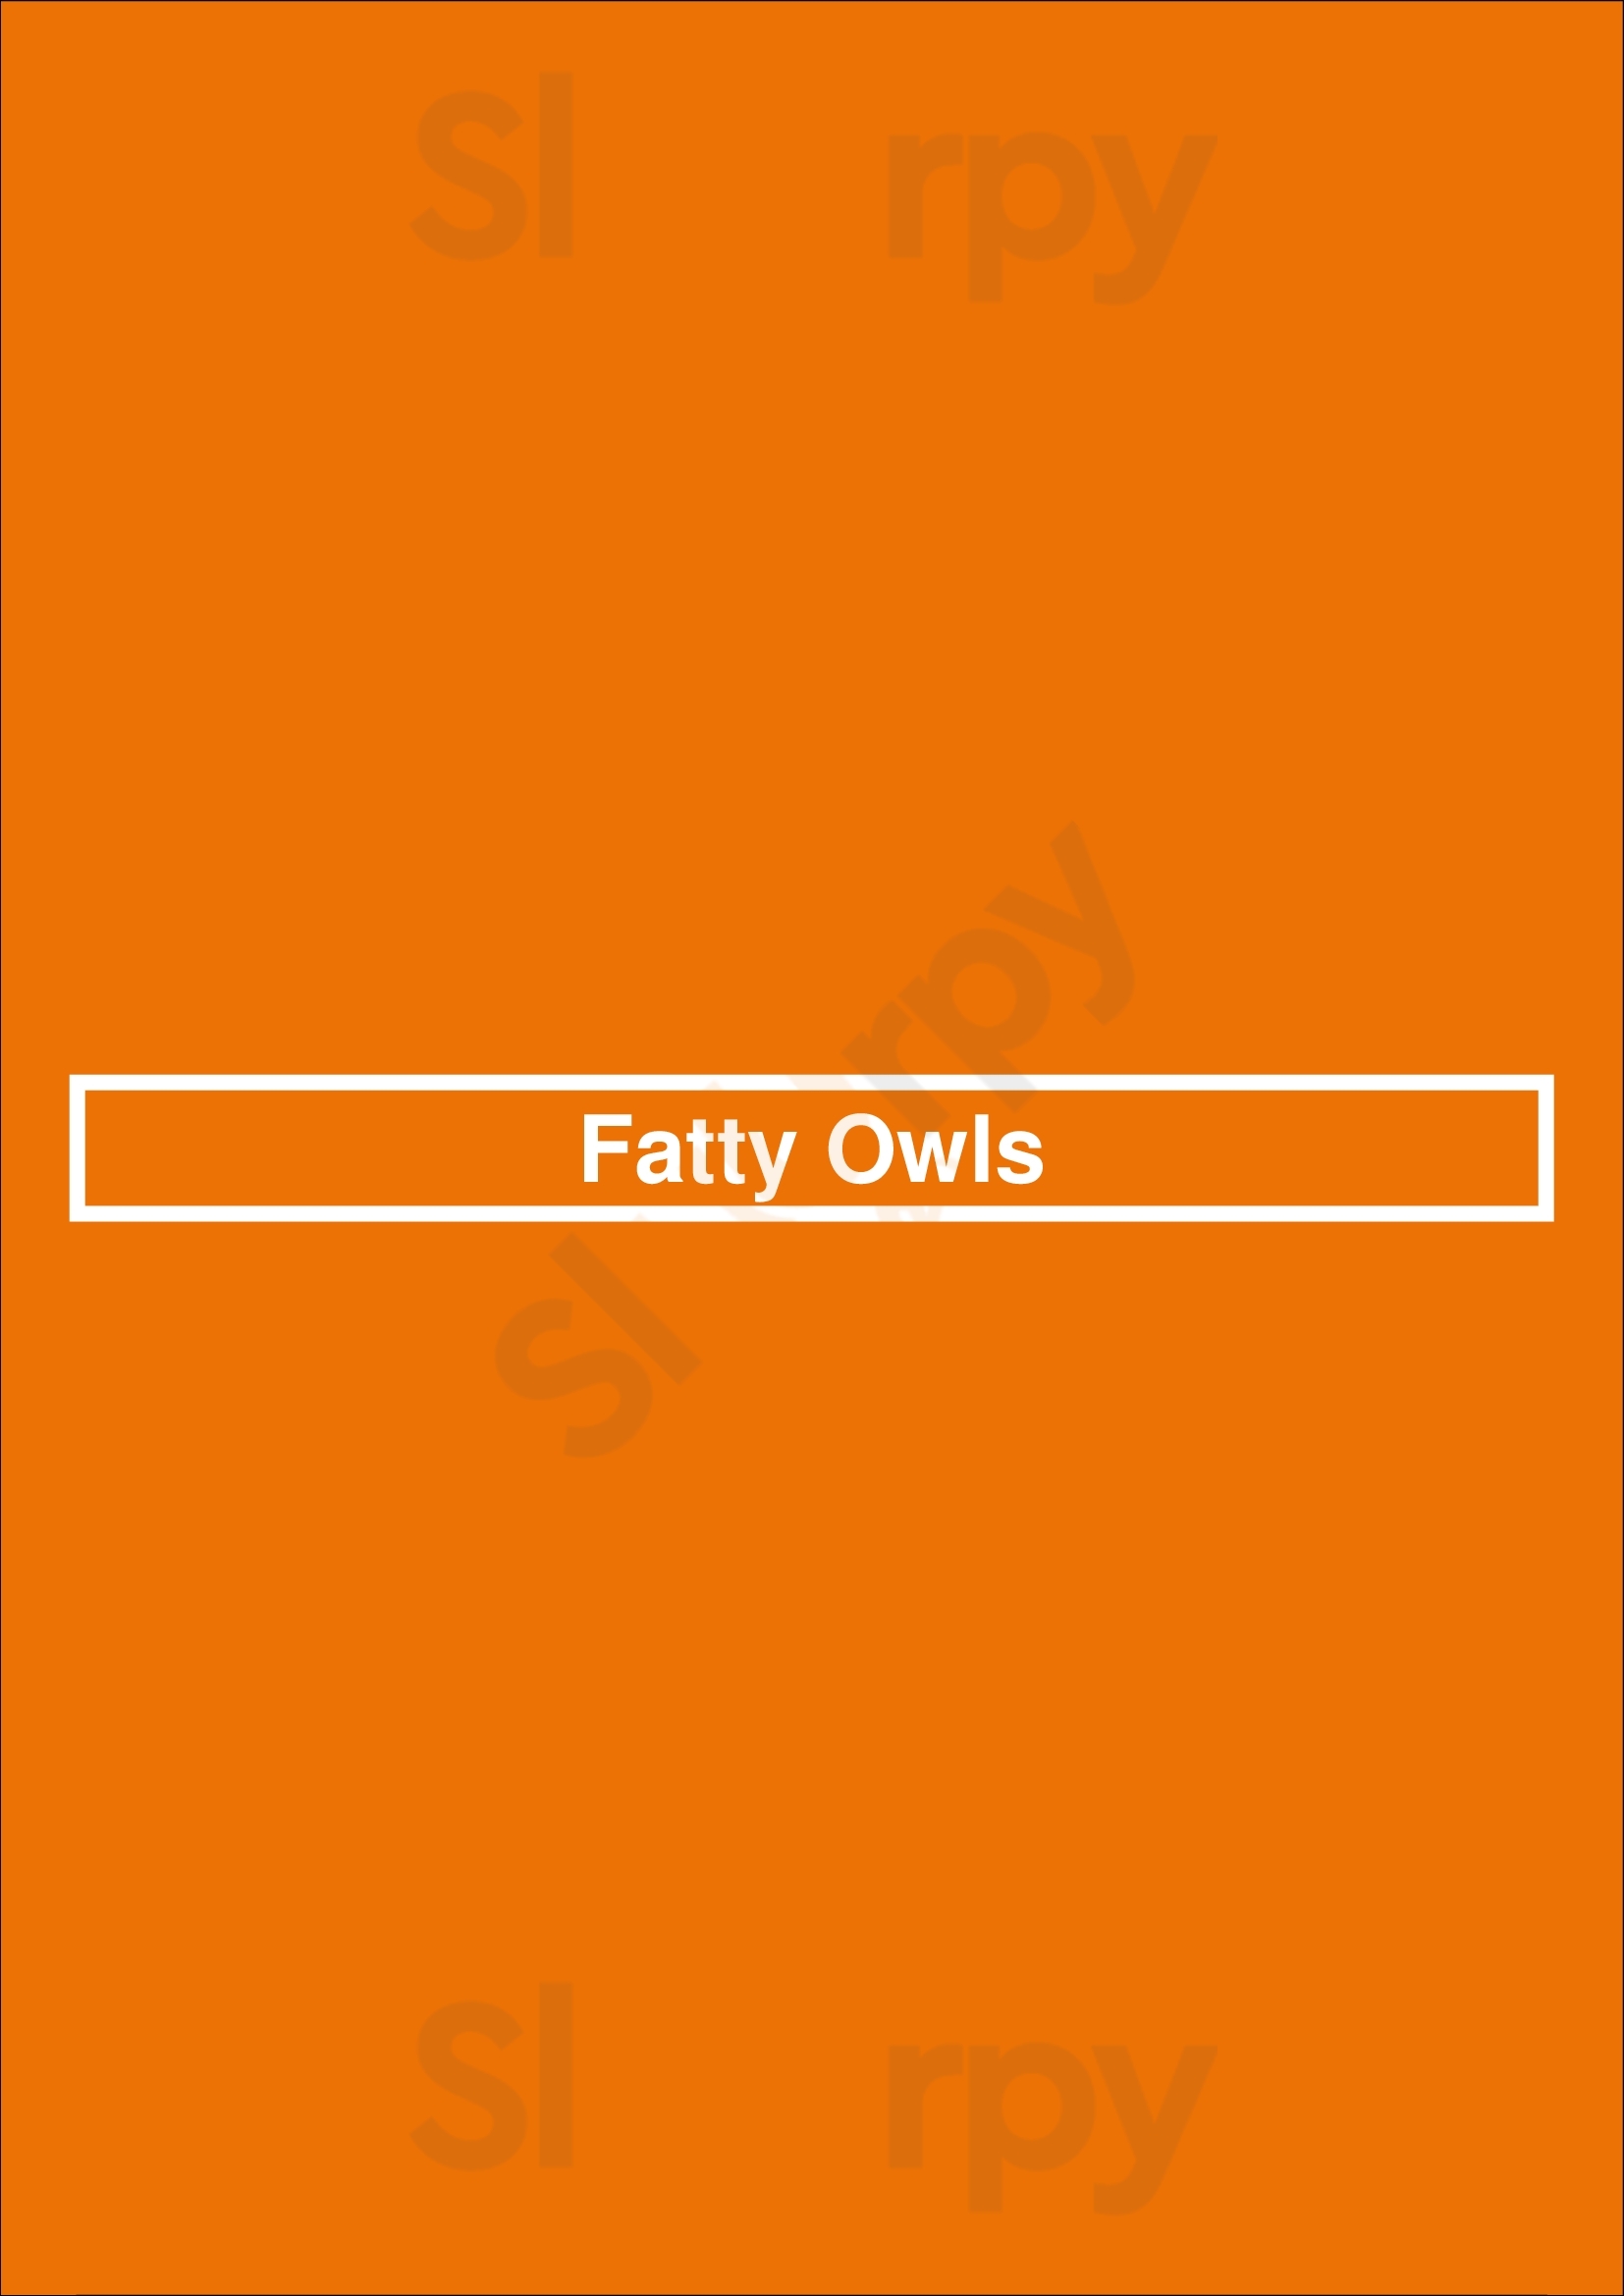 Fatty Owls Edinburgh Menu - 1